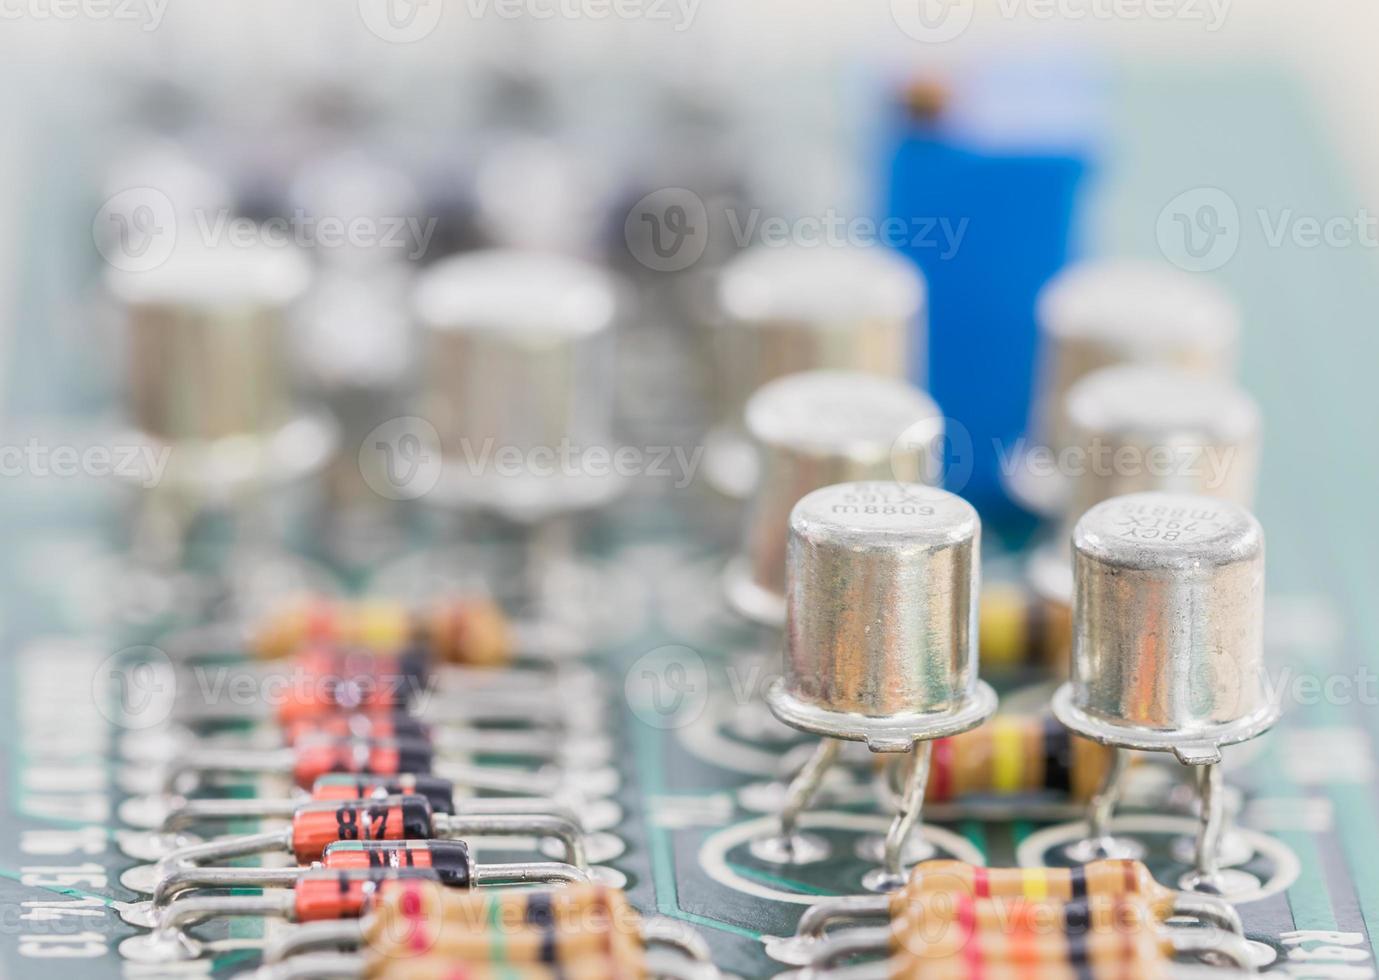 condensadores y conjunto de resistencias en la placa de circuito foto